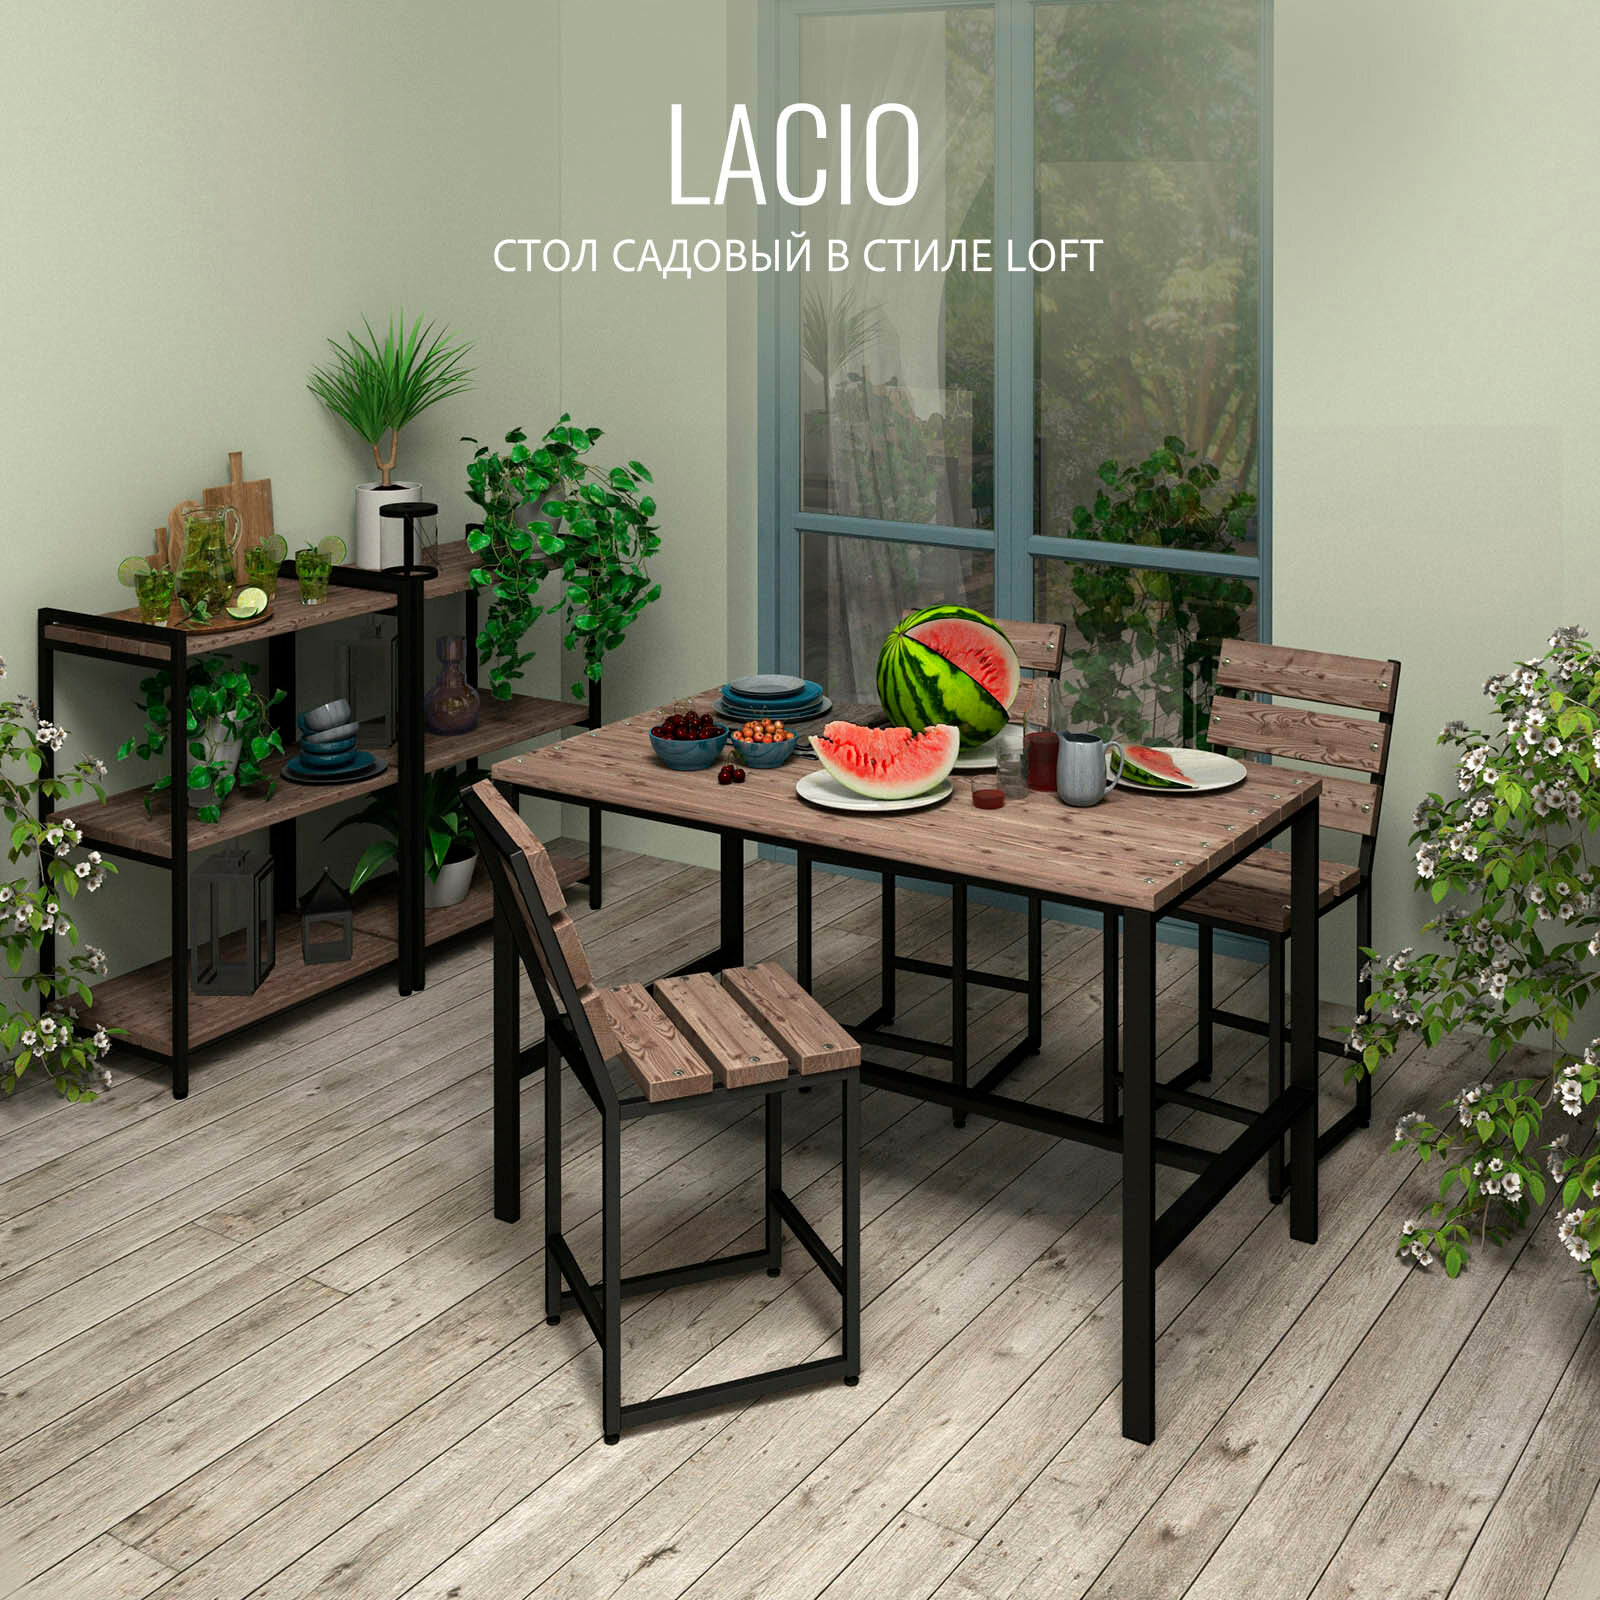 Стол садовый LACIO loft, коричневый, стол деревянный для дачи, стол уличный металлический, 120х60х75 см, 1шт, гростат